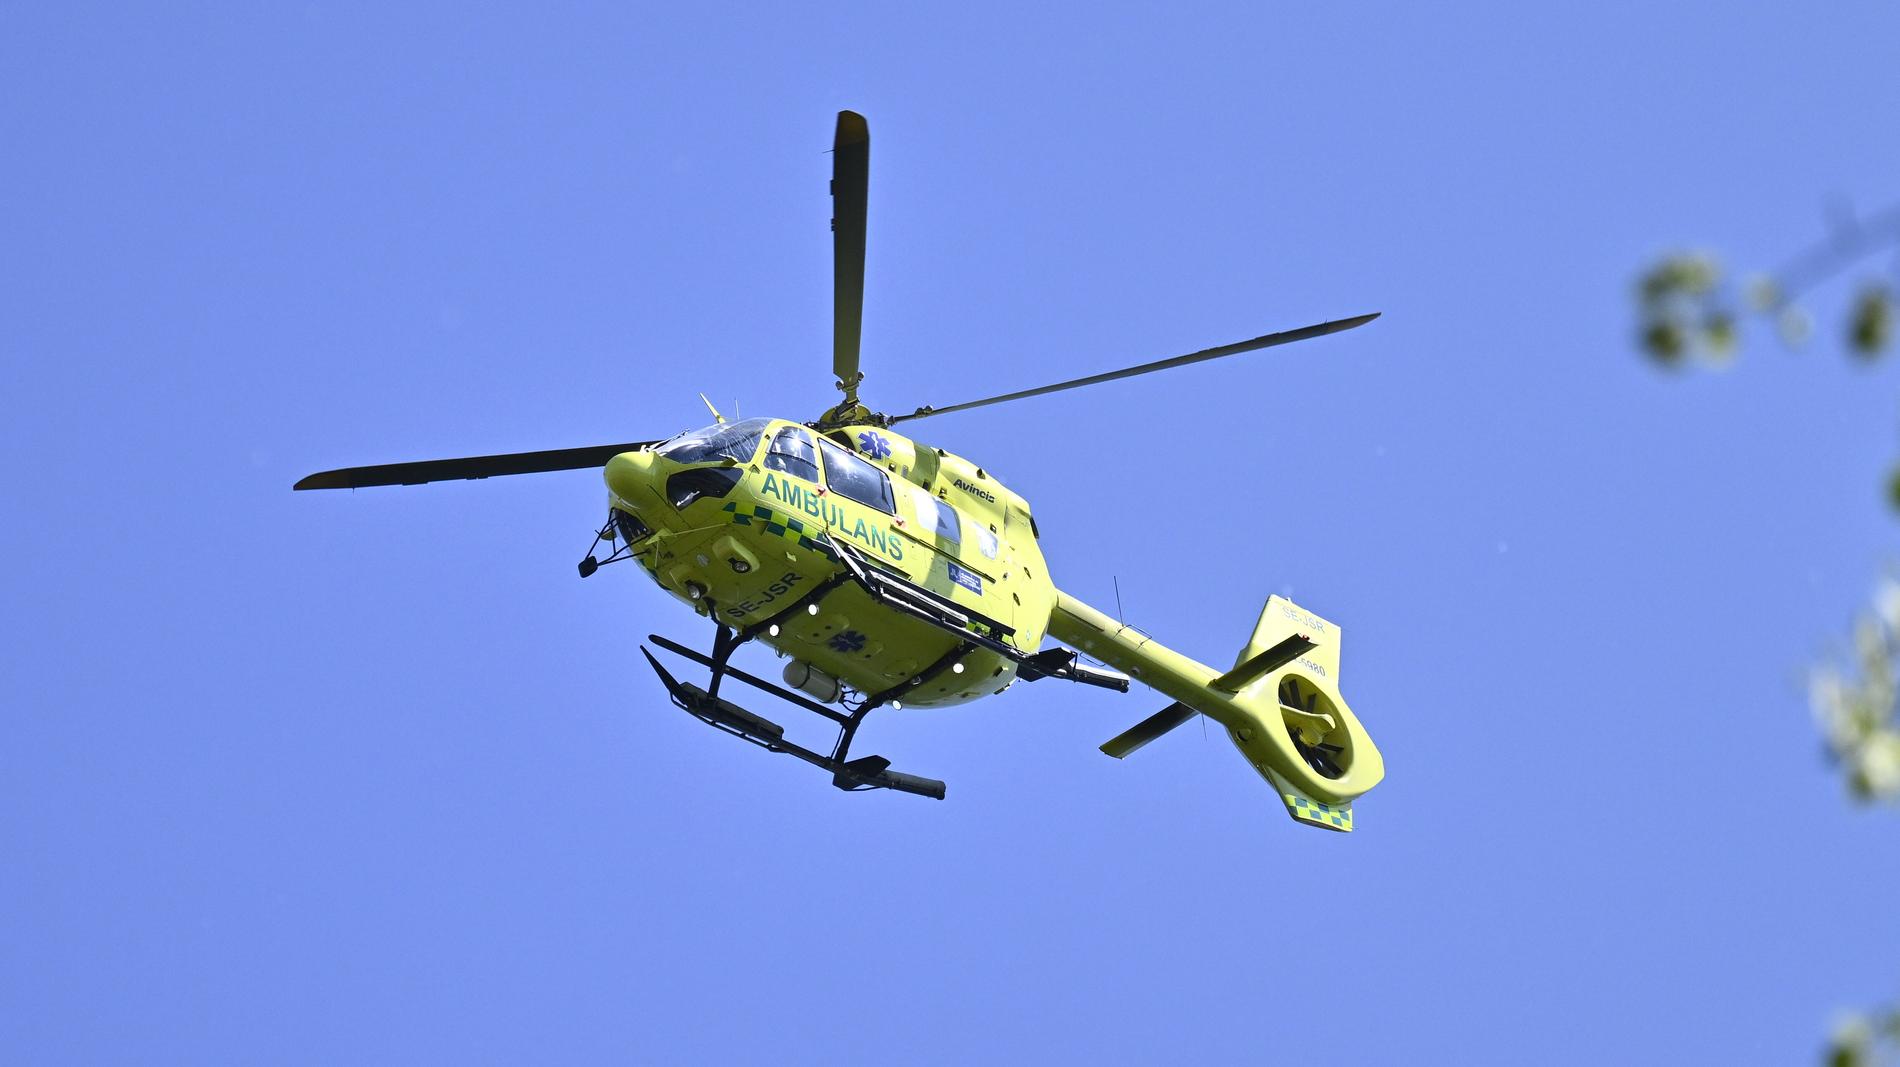 Gothia Cup-spelaren fördes till sjukhus med helikopter efter olyckan. Arkivbild.